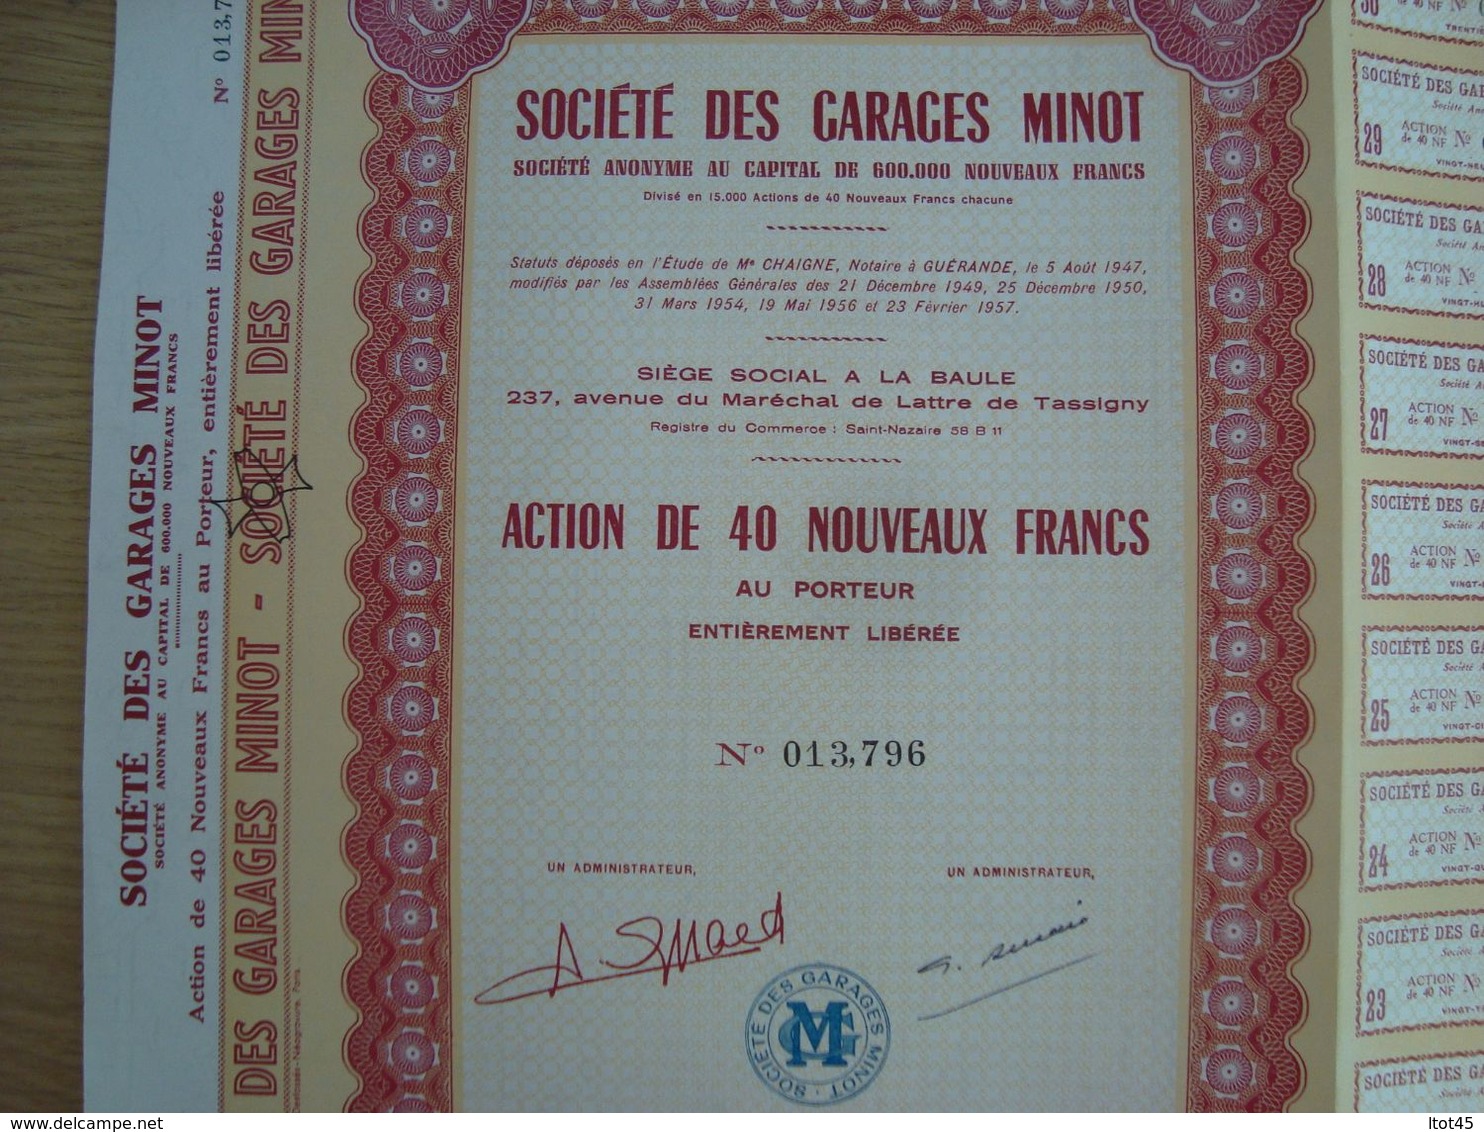 ACTION DE 40 NOUVEAUX FRANCS SOCIETE DES GARAGES MINOT 1960 - Automovilismo